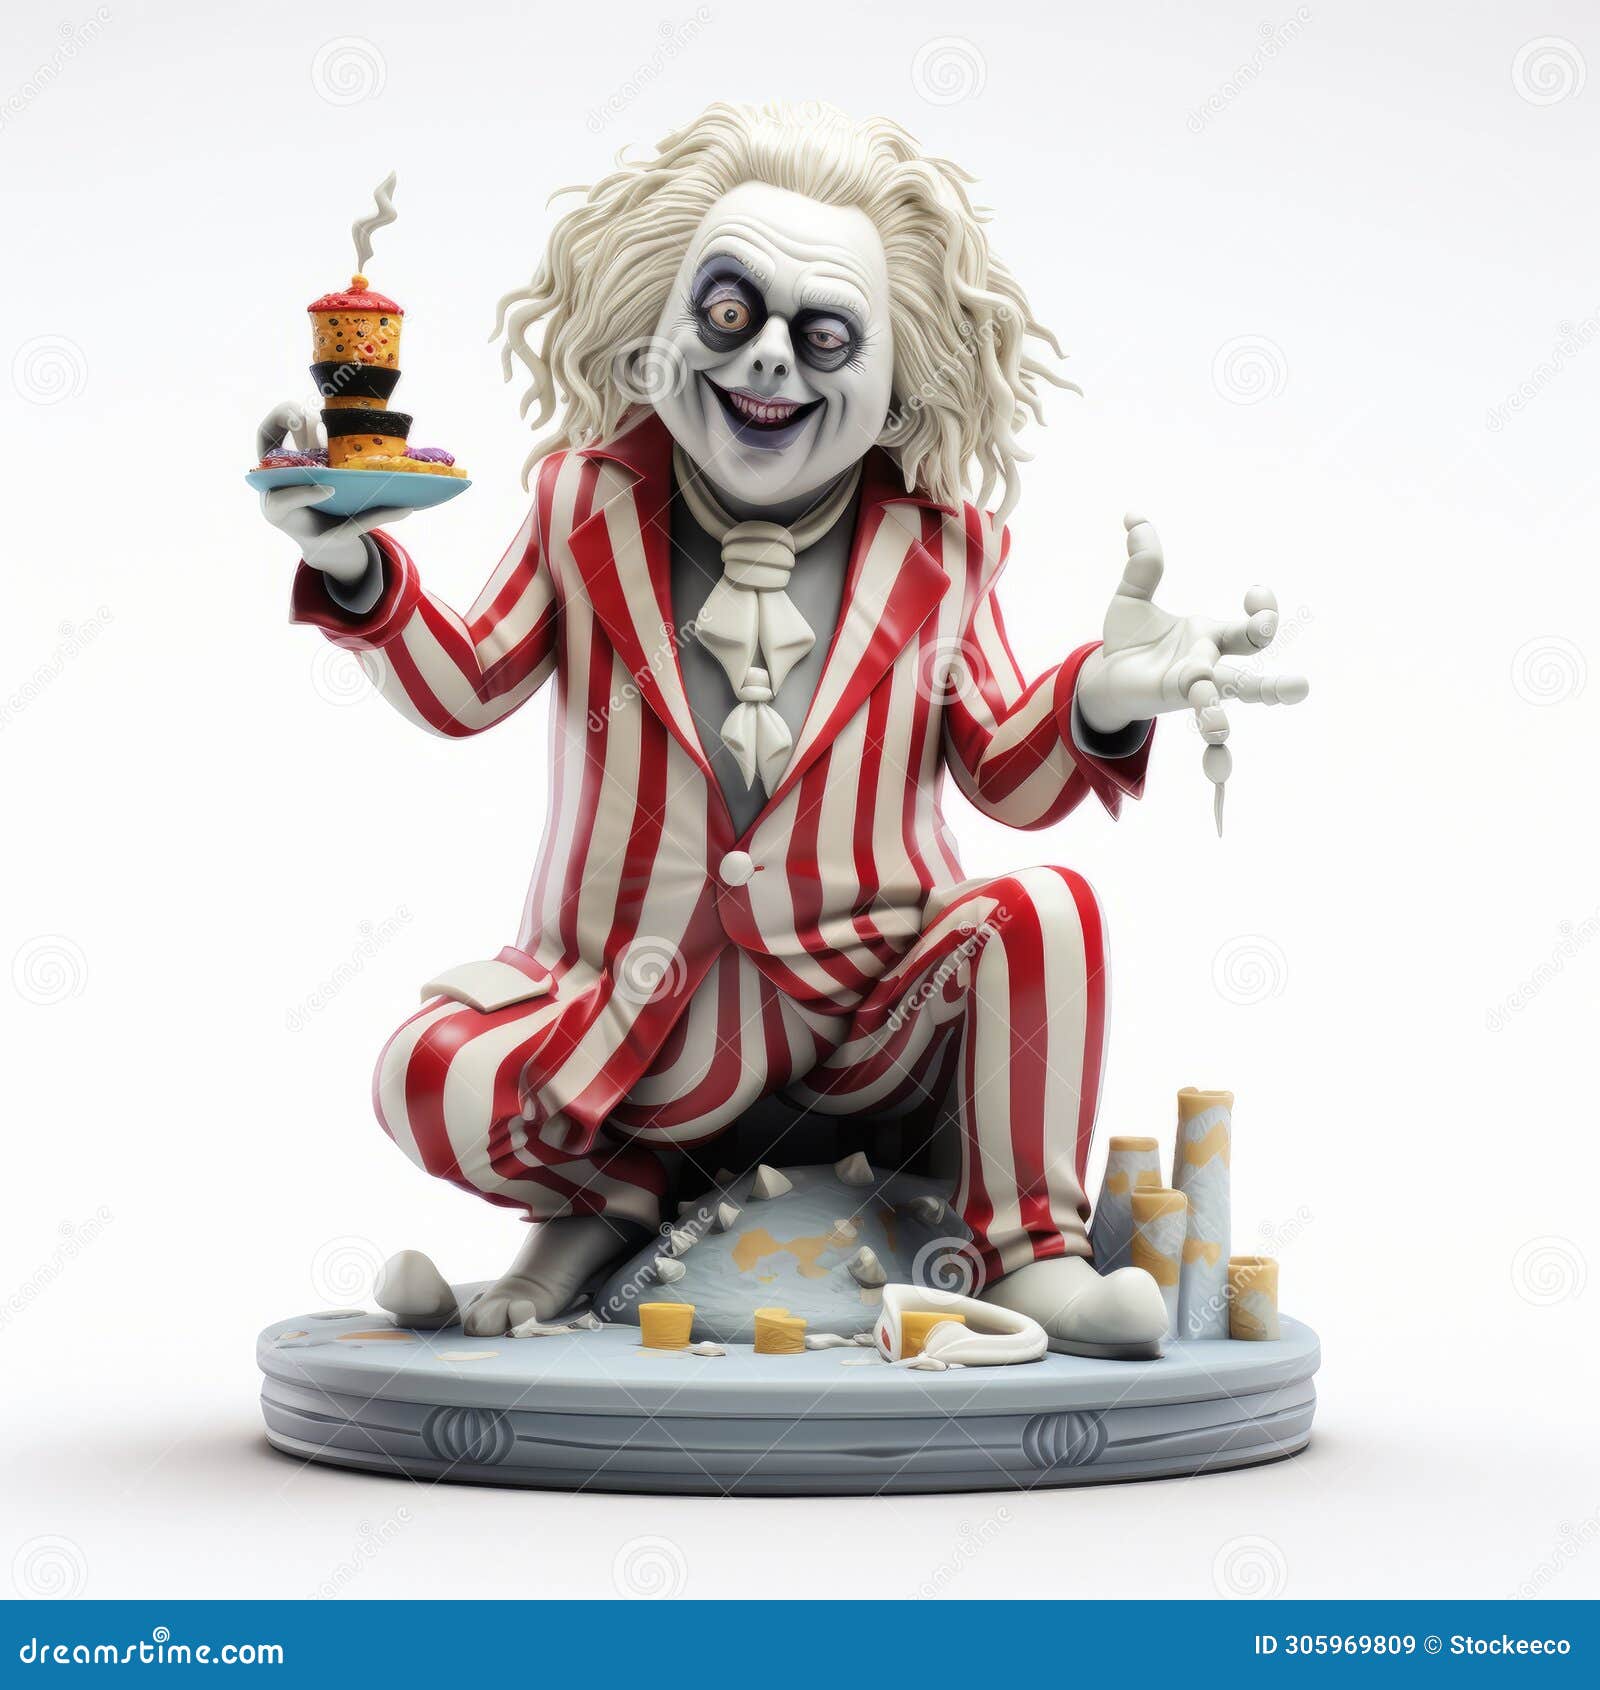 striped joker figurine holding cake - zbrush style